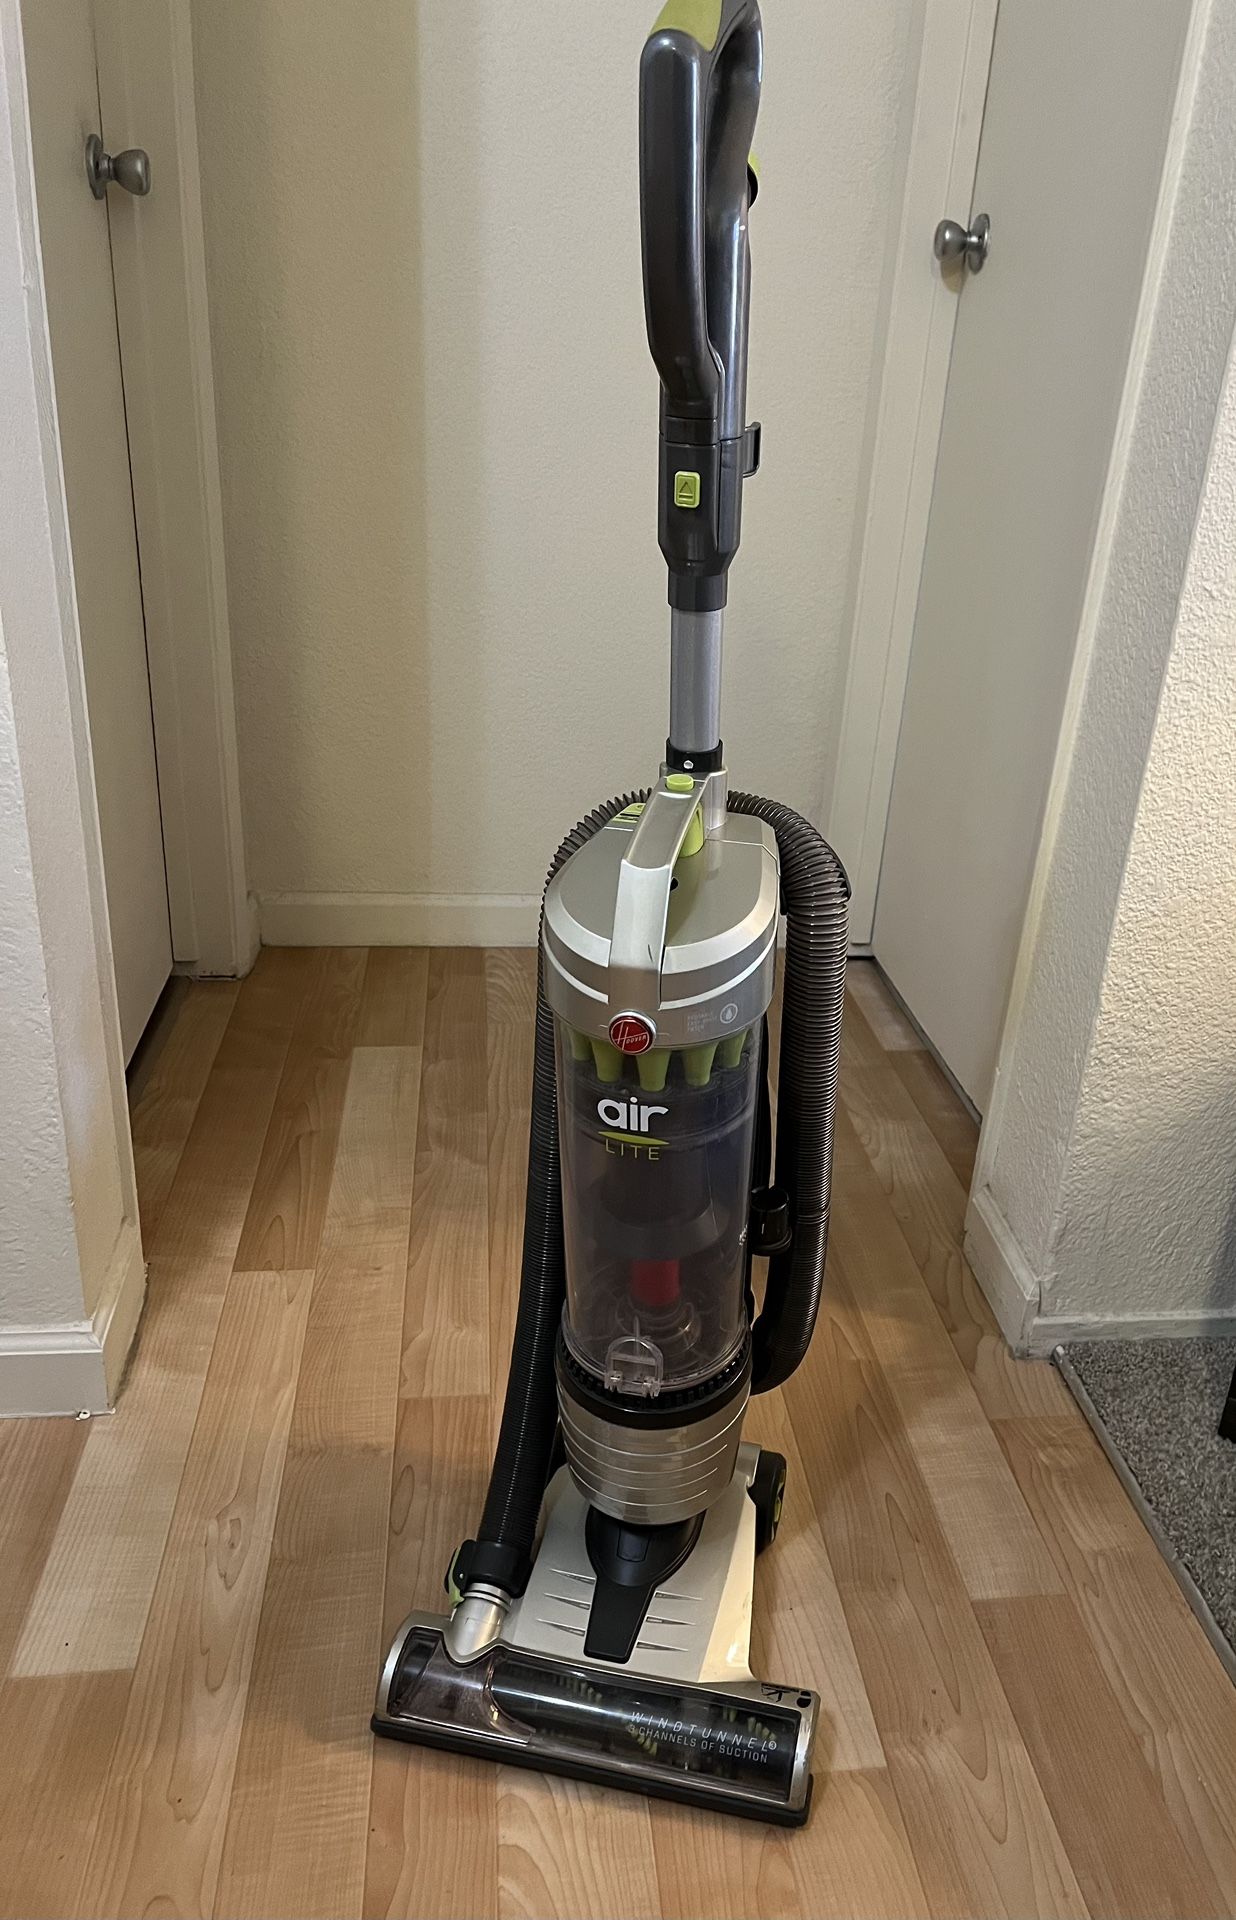 Hoover Air Lite Vacuum